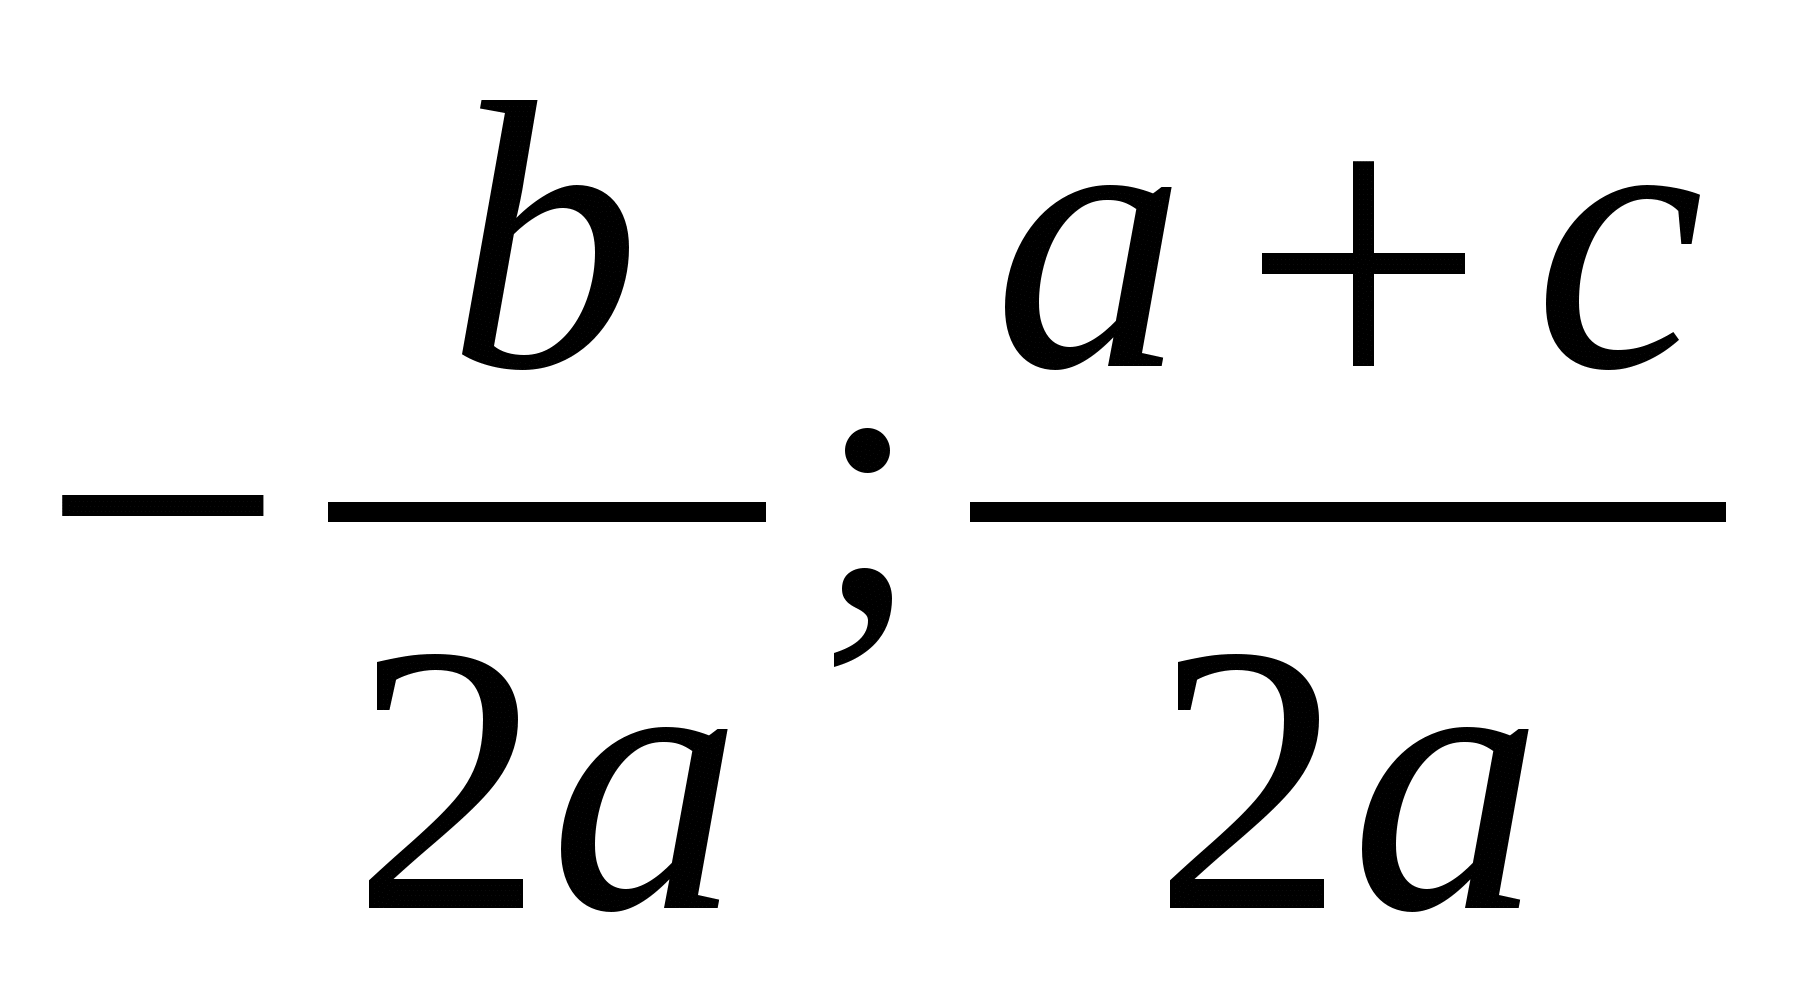 Доклад по алгебре Решение квадратных уравнений различными способами (8 класс)